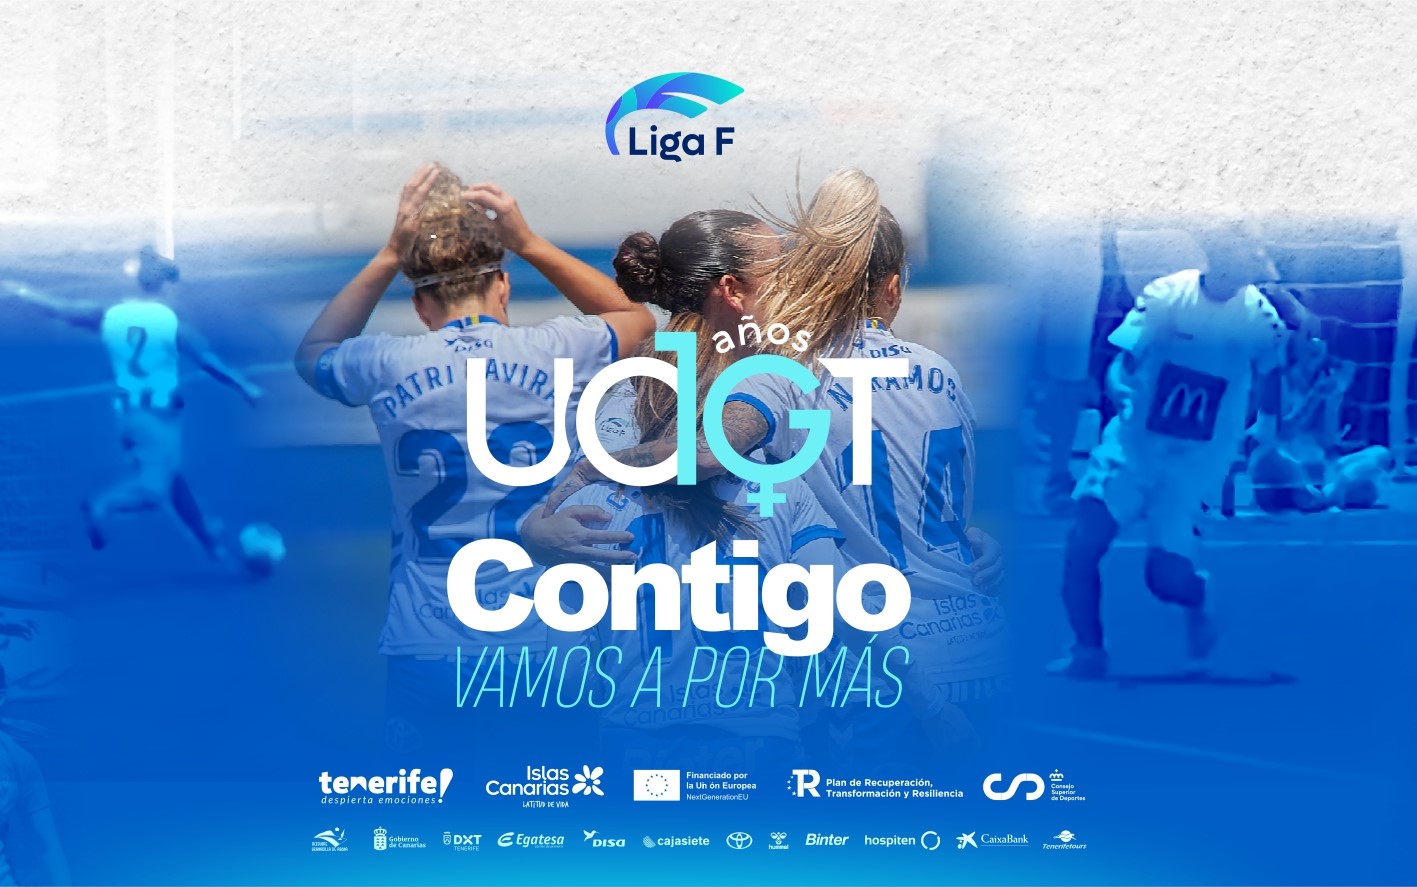 La UDG Tenerife lanza la Campaña de Abonos en su 10º aniversario: 'Contigo vamos a por más'